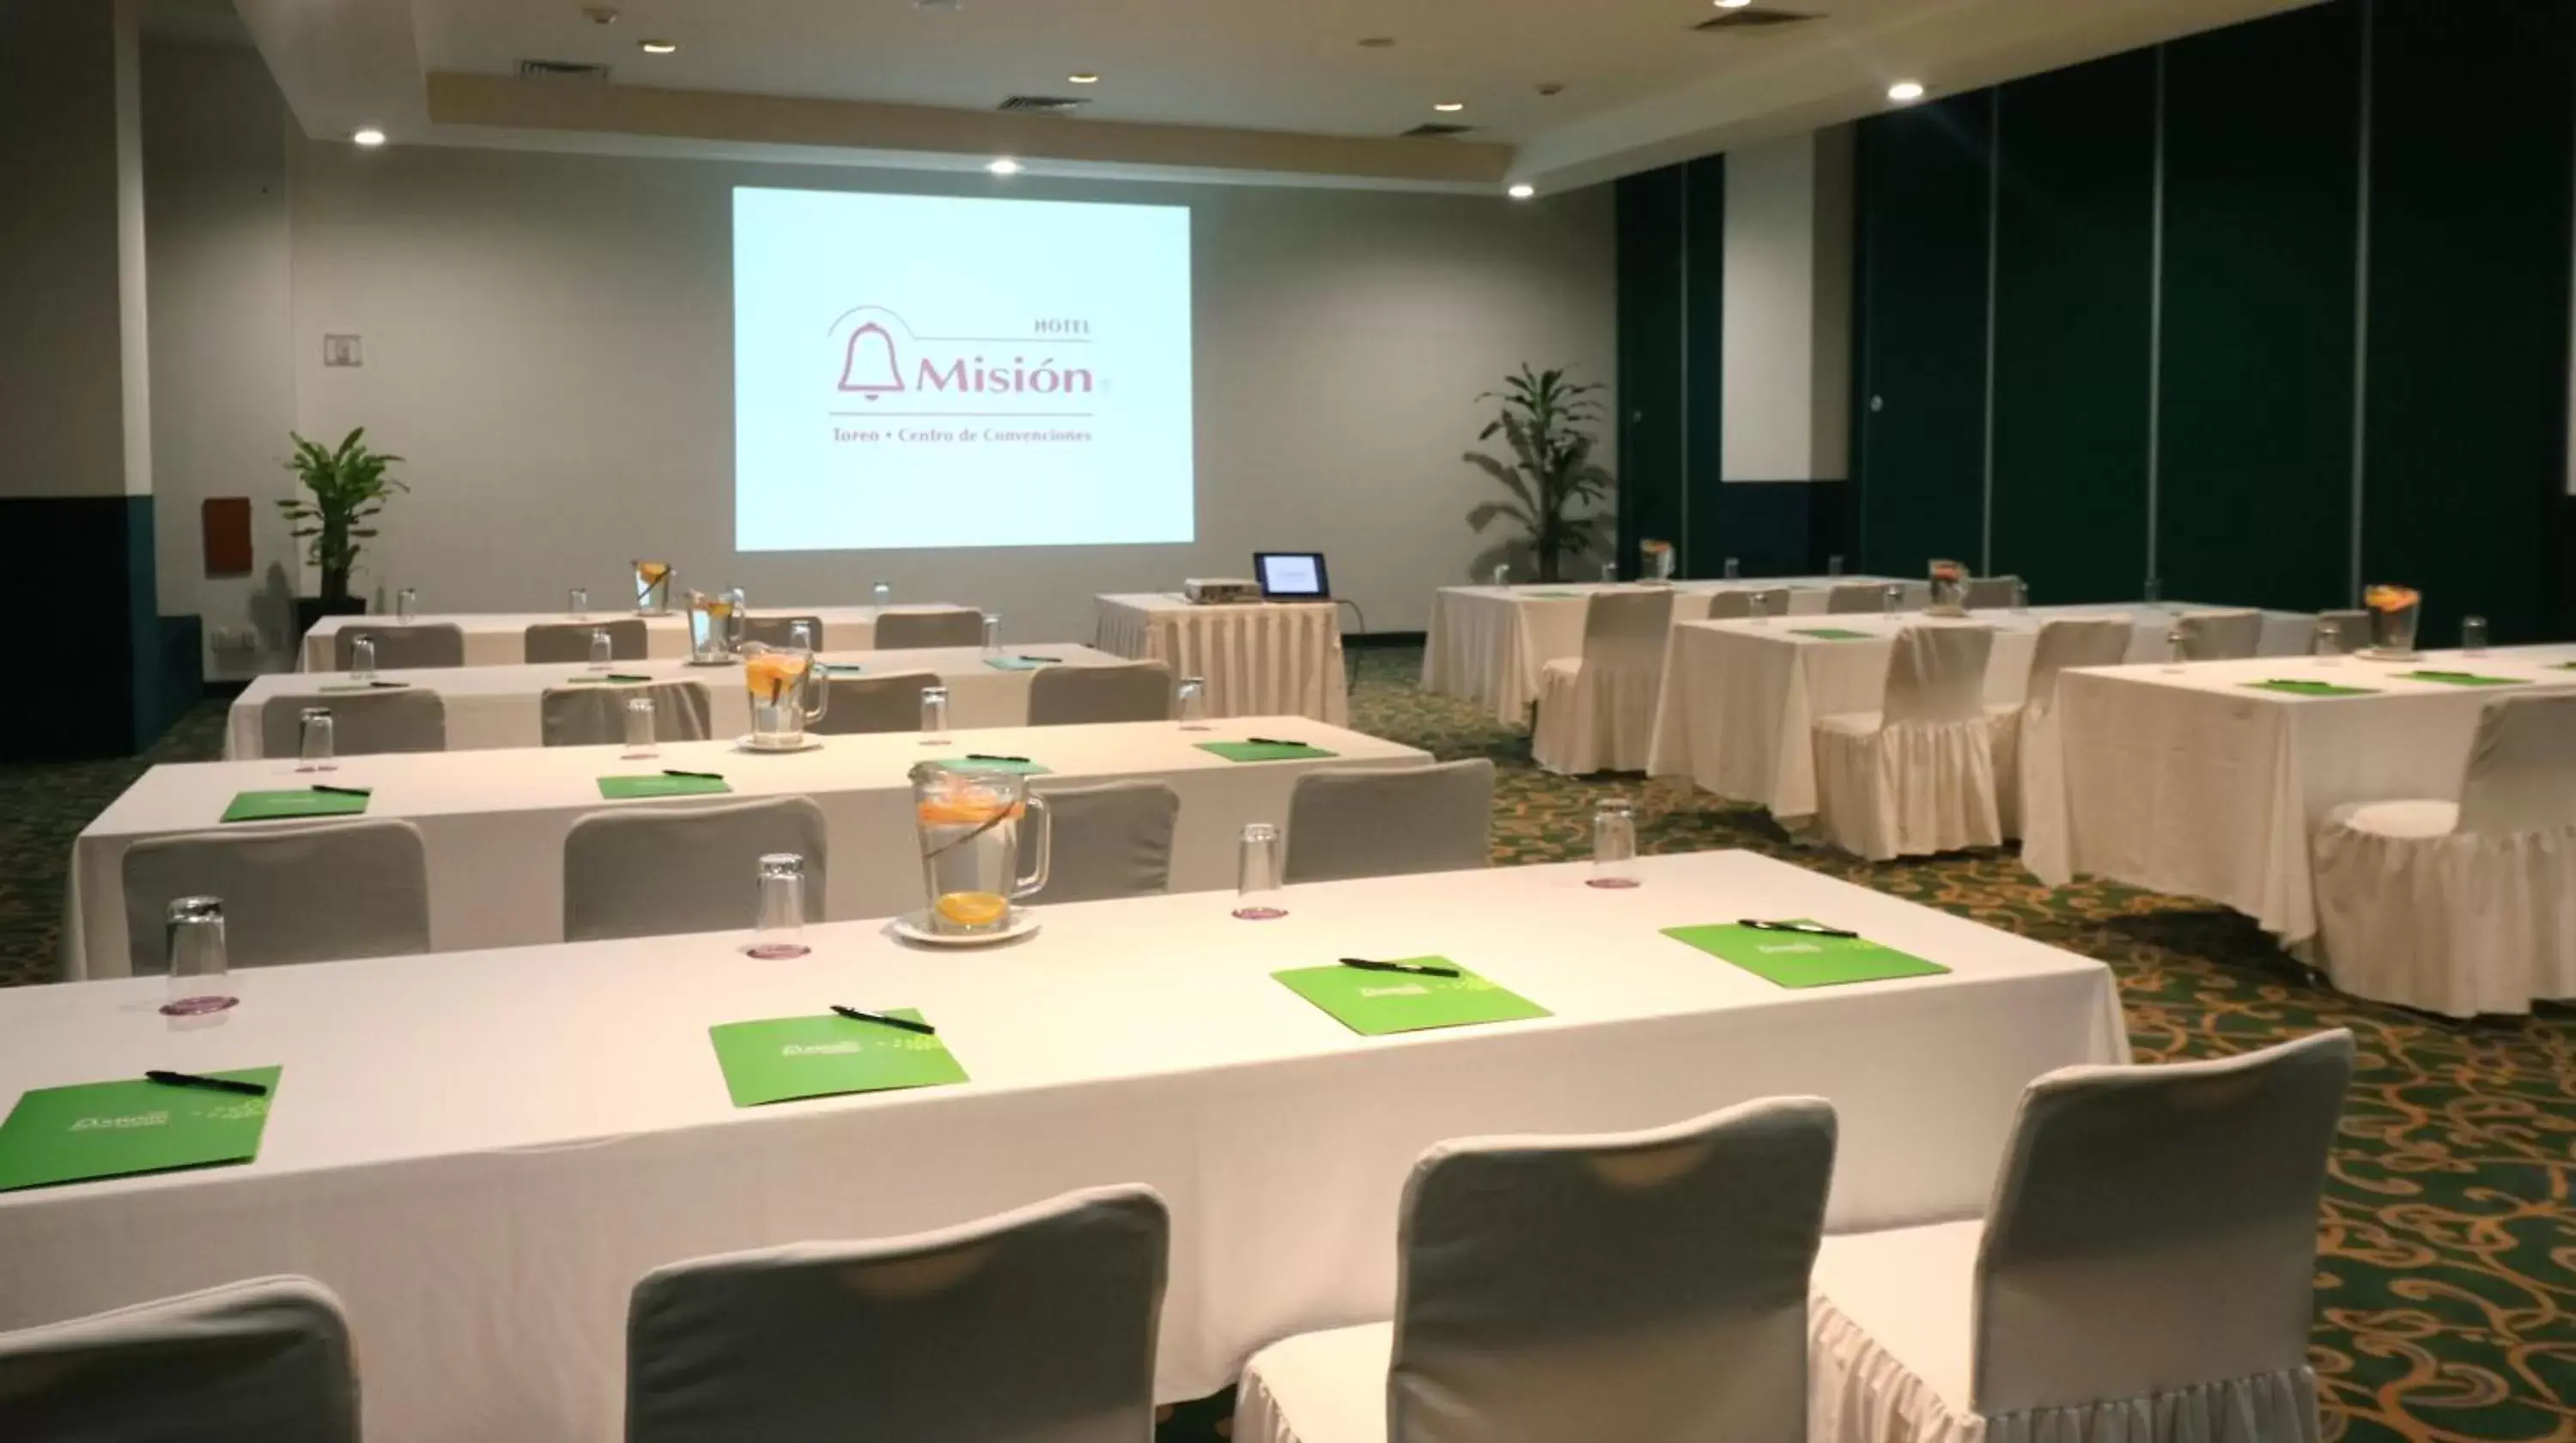 Meeting/conference room in Mision Toreo Centro de Convenciones